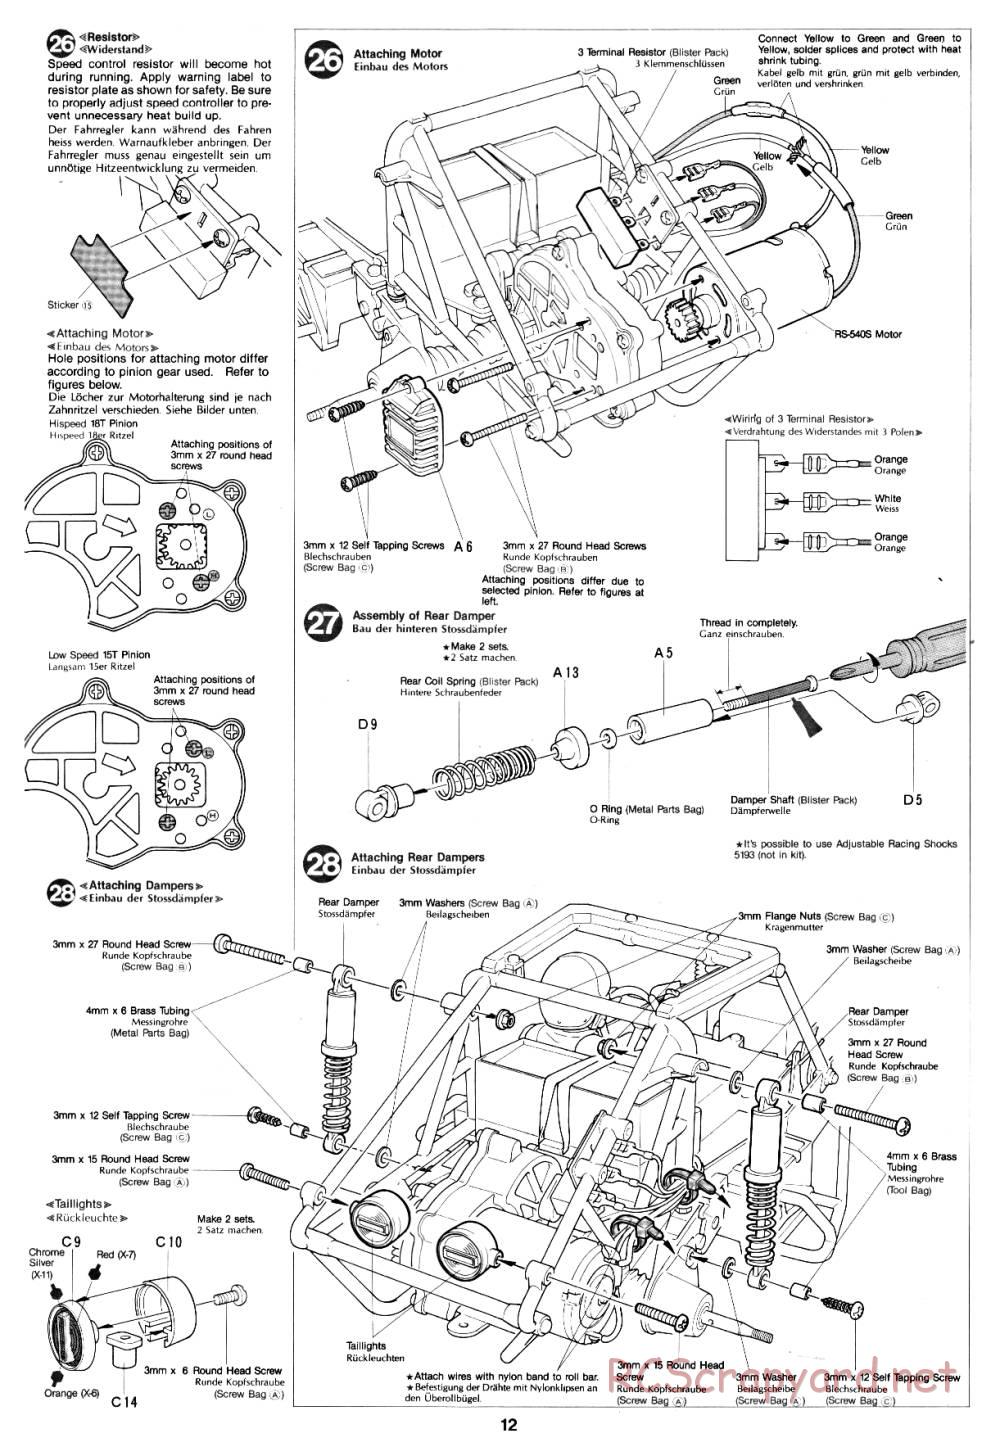 Tamiya - Fast Attack Vehicle - 58046 - Manual - Page 12